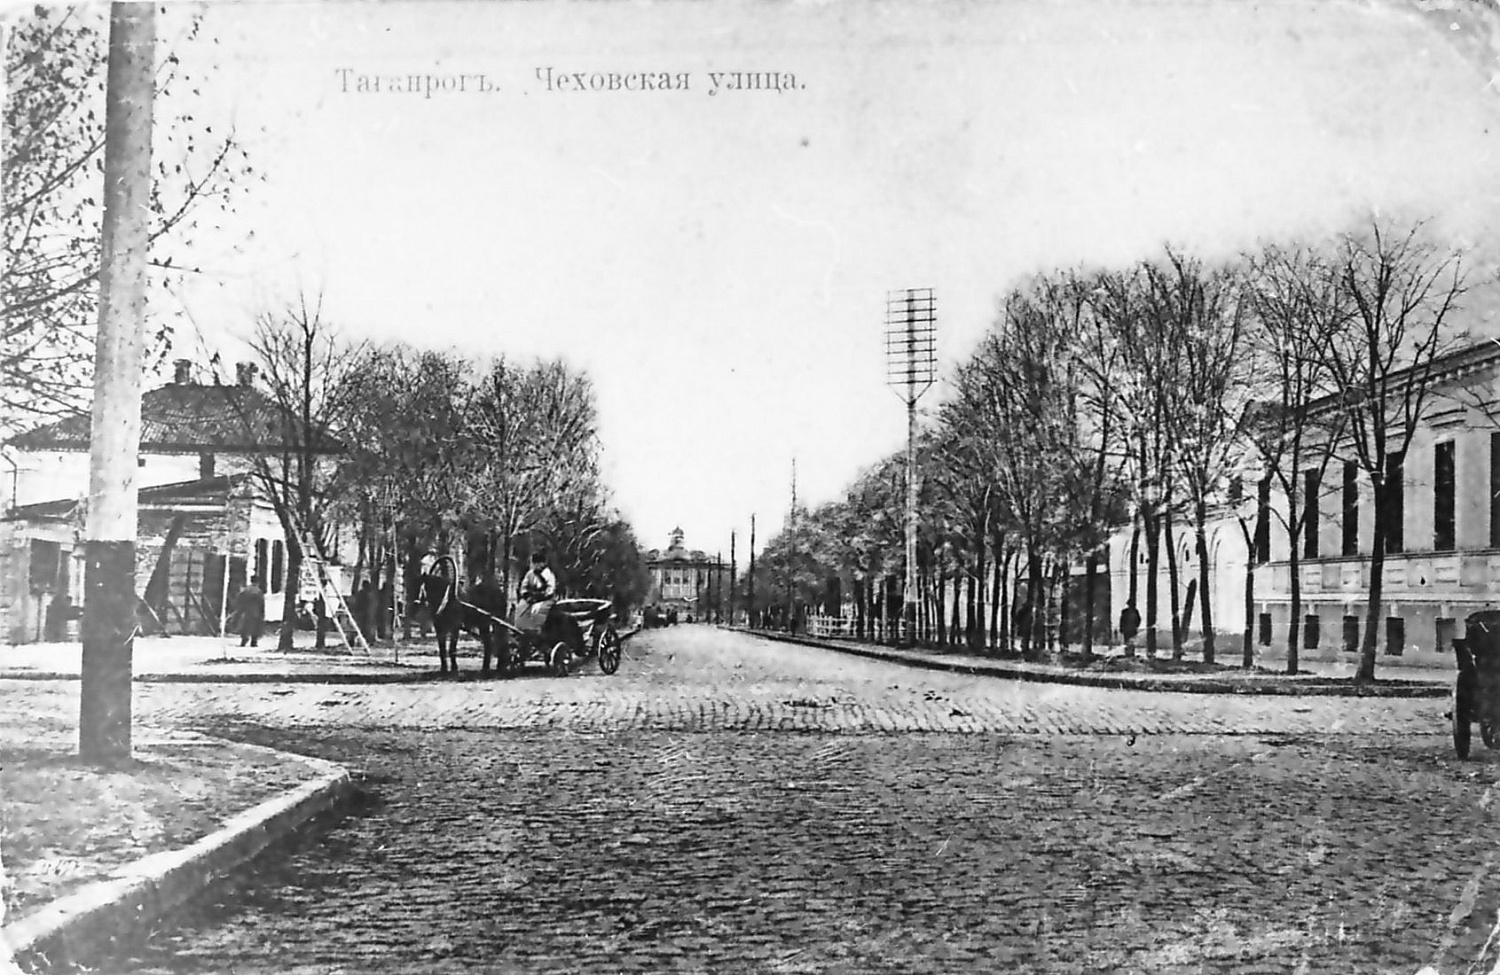 Таганрог. Чеховская улица. Открытка